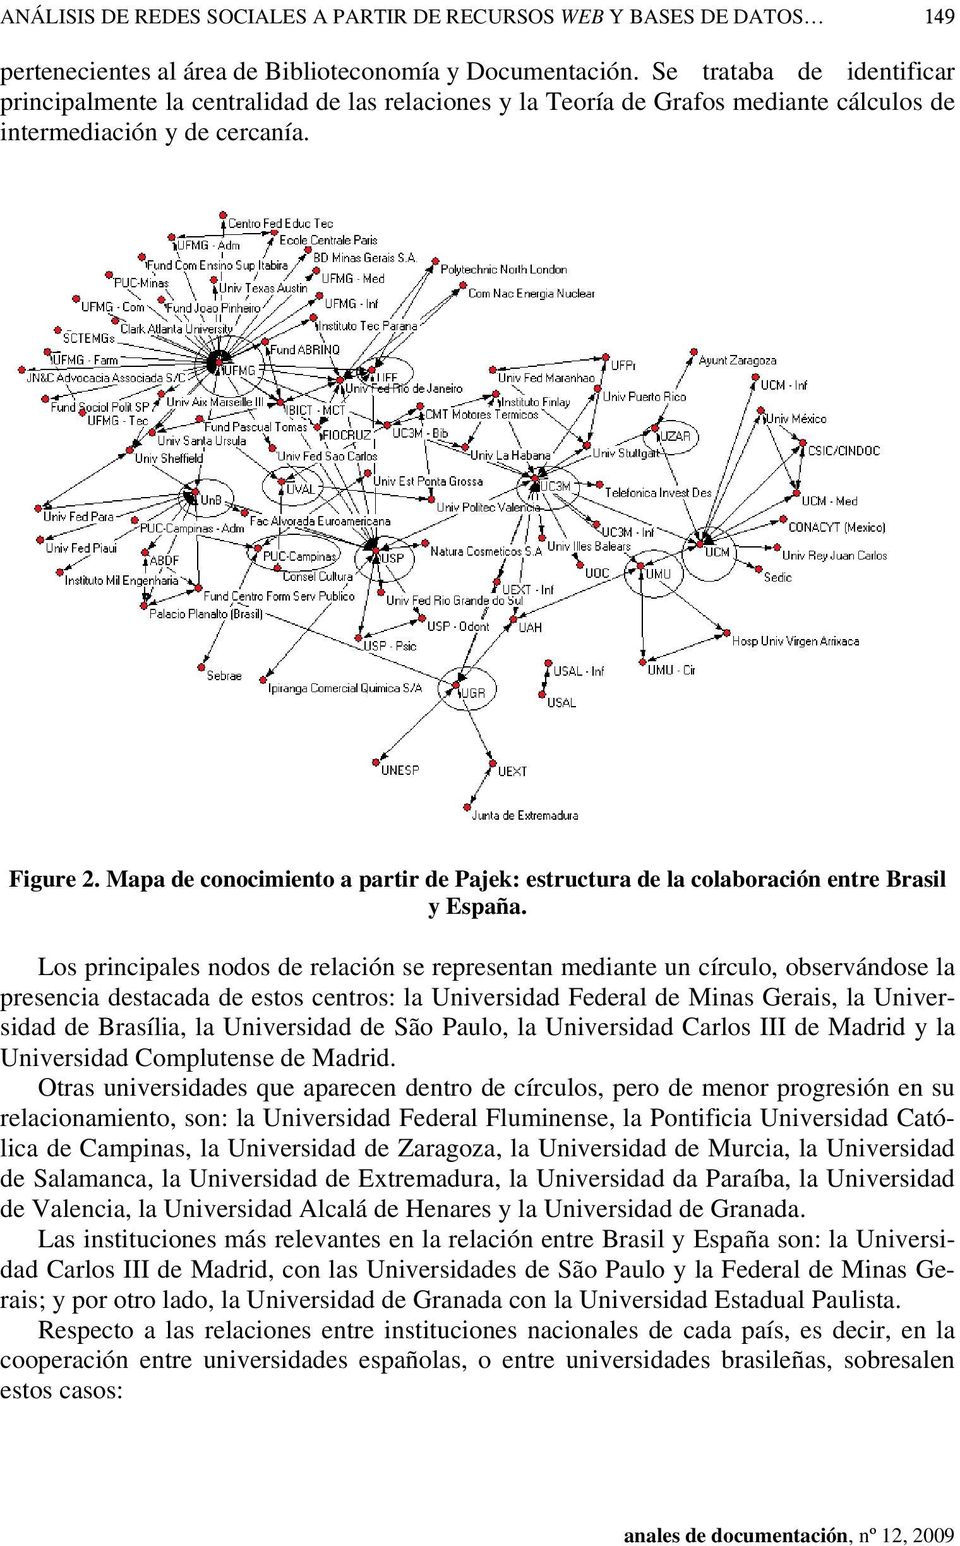 Mapa de conocimiento a partir de Pajek: estructura de la colaboración entre Brasil y España.